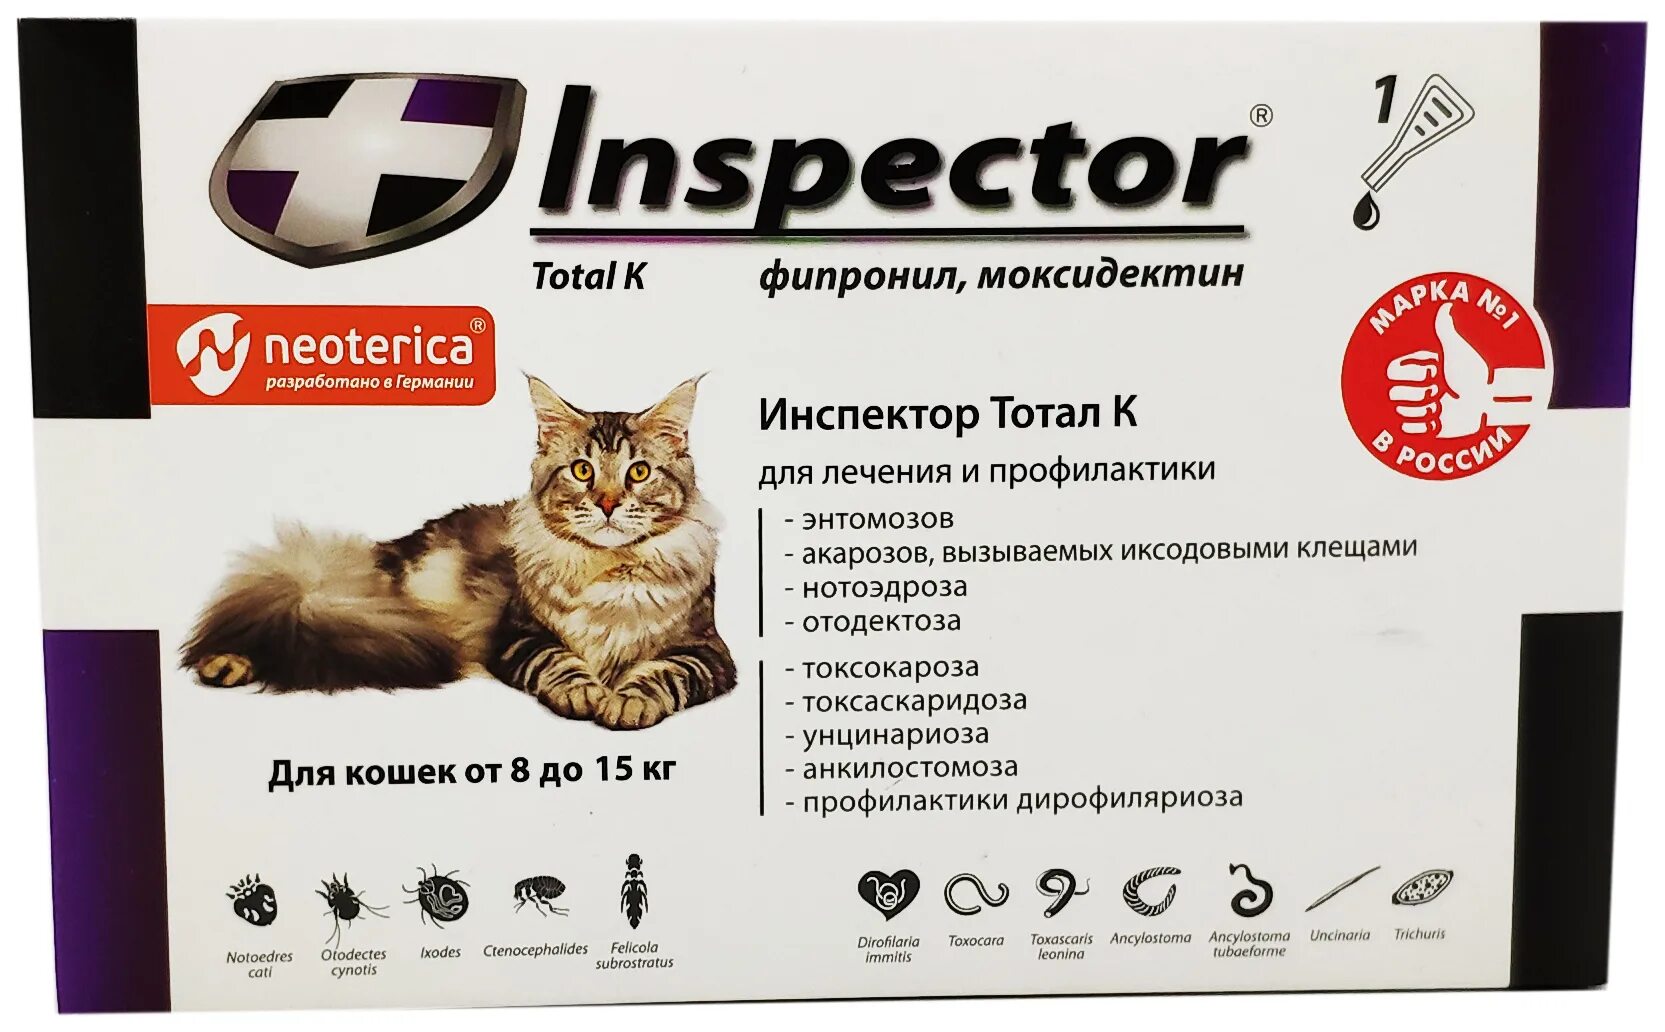 Против клещей для кошек. Inspector total k капли от блох, клещей и гельминтов для кошек от 4 до 8 кг. Inspector Quadro для кошек от 8 до 15 кг. Инспектор Квадро к капли для кошек 8-15кг 1,5мл. Inspector раствор от блох и клещей Quadro к от 4 до 8 кг для кошек.